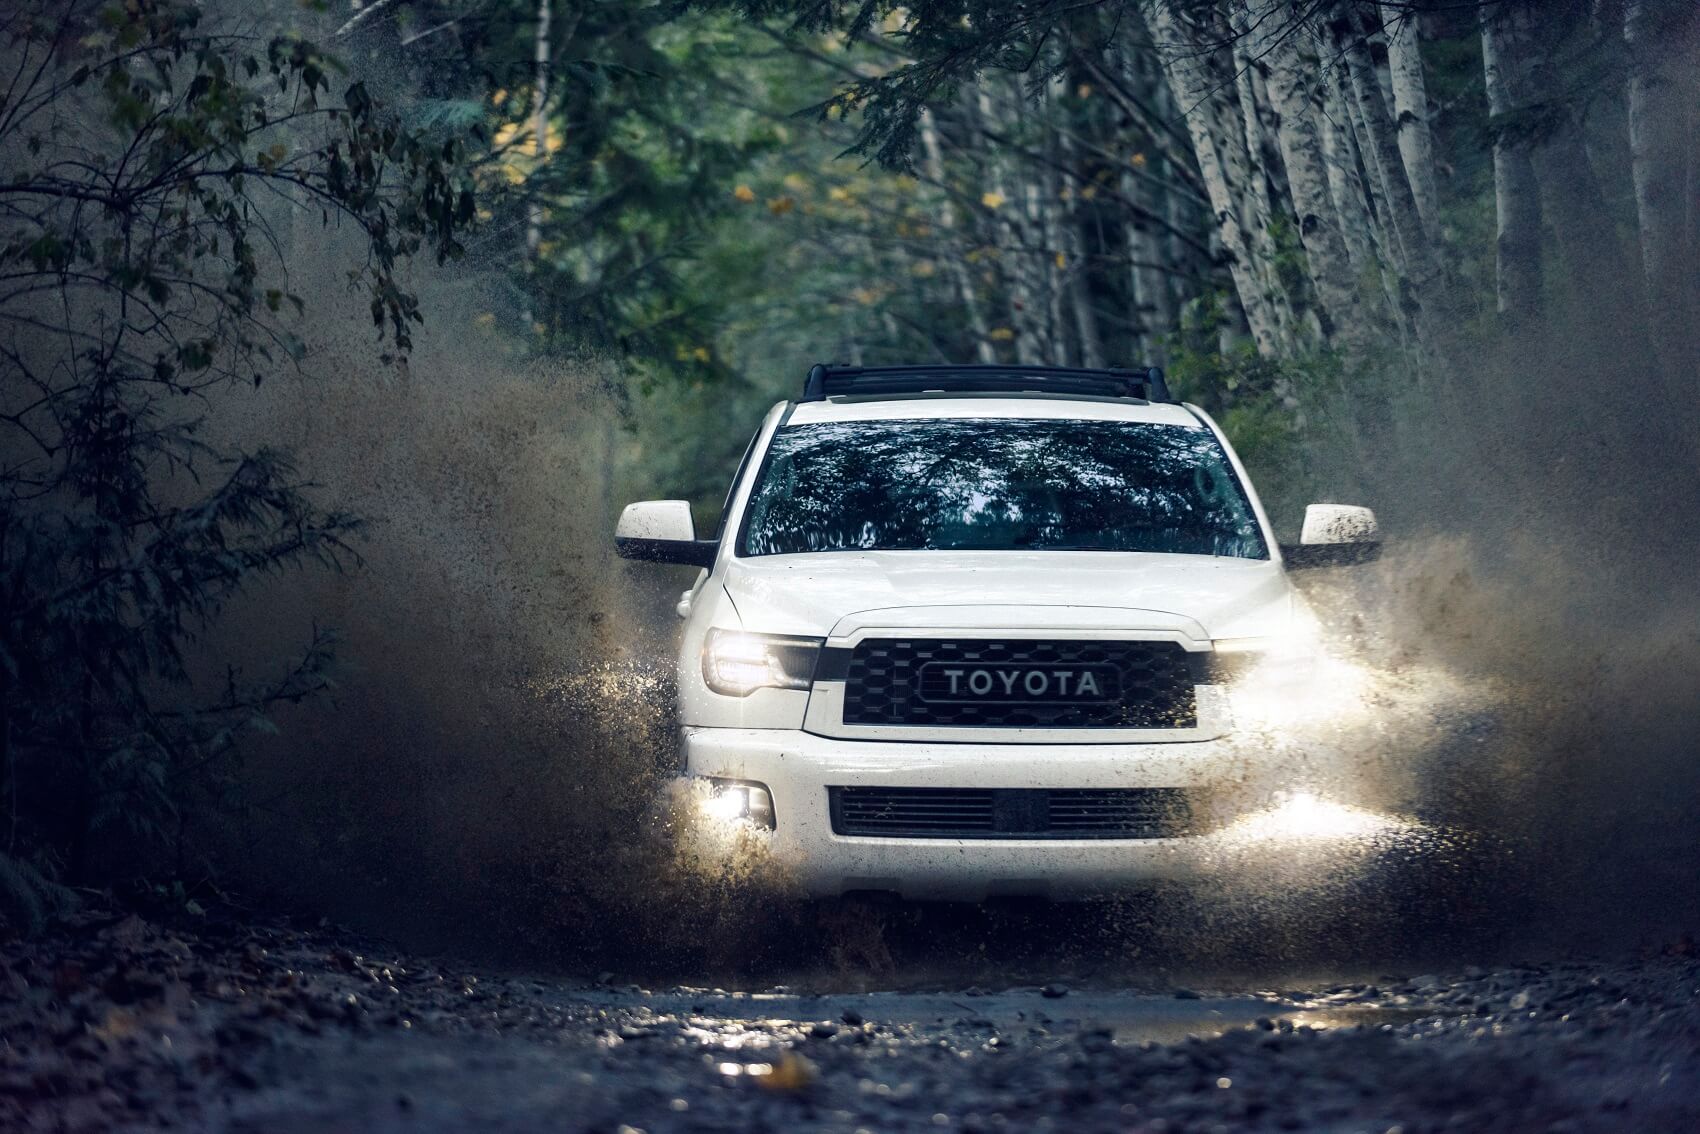 2022 Toyota Sequoia Pro in Mud